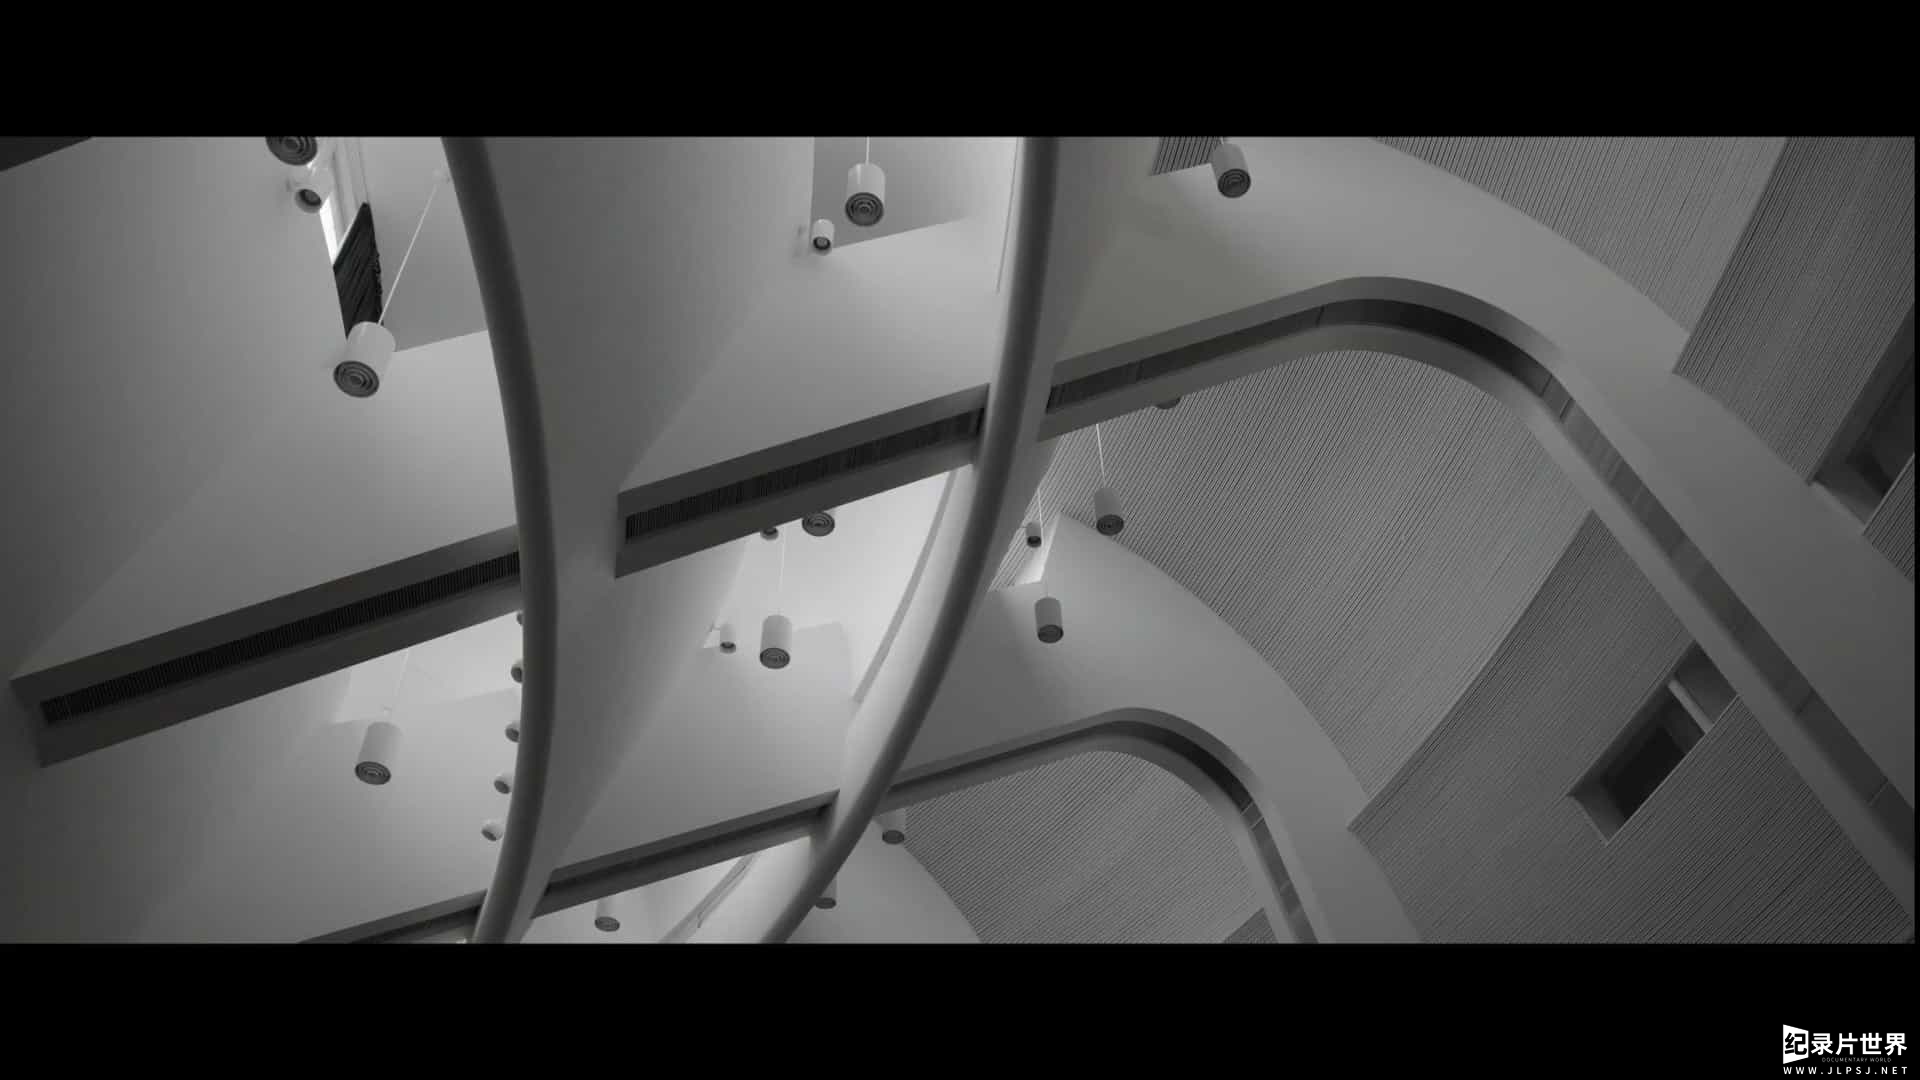 芬兰纪录片《阿尔托/ Aalto建築情書(港) Aalto 2020》全1集